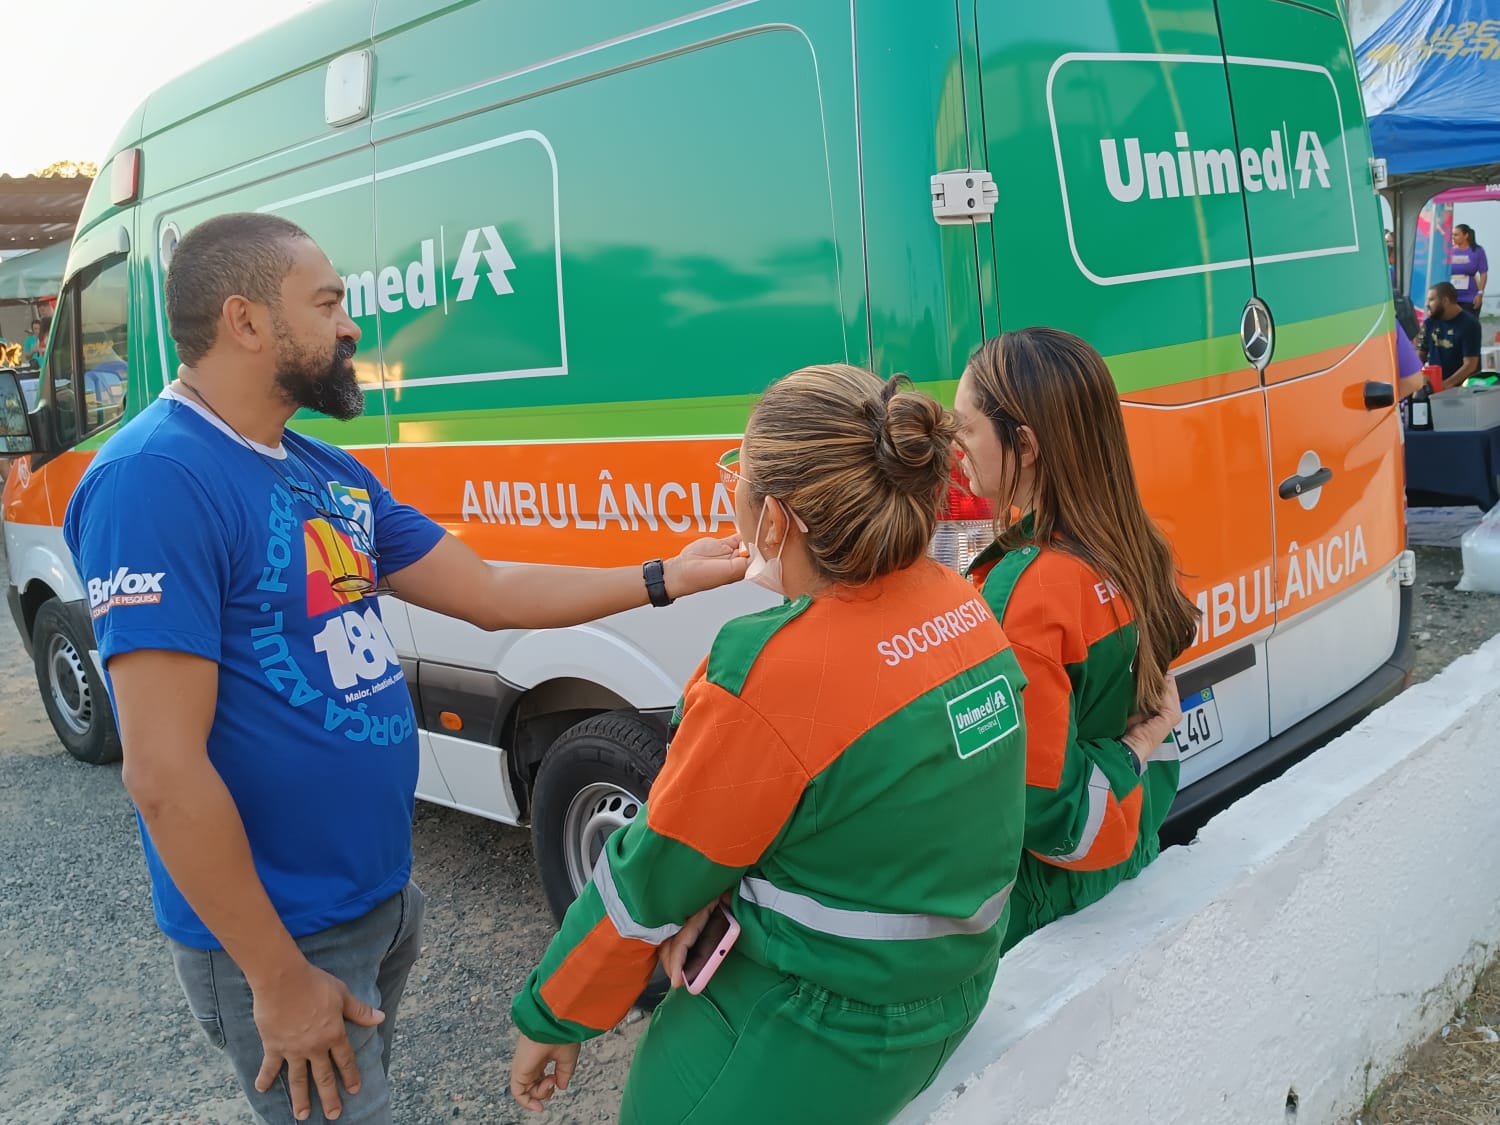 Duas das seis ambulâncias do sistema Unimed estavam de prontidão para atender a eventuais ocorrências na corrida